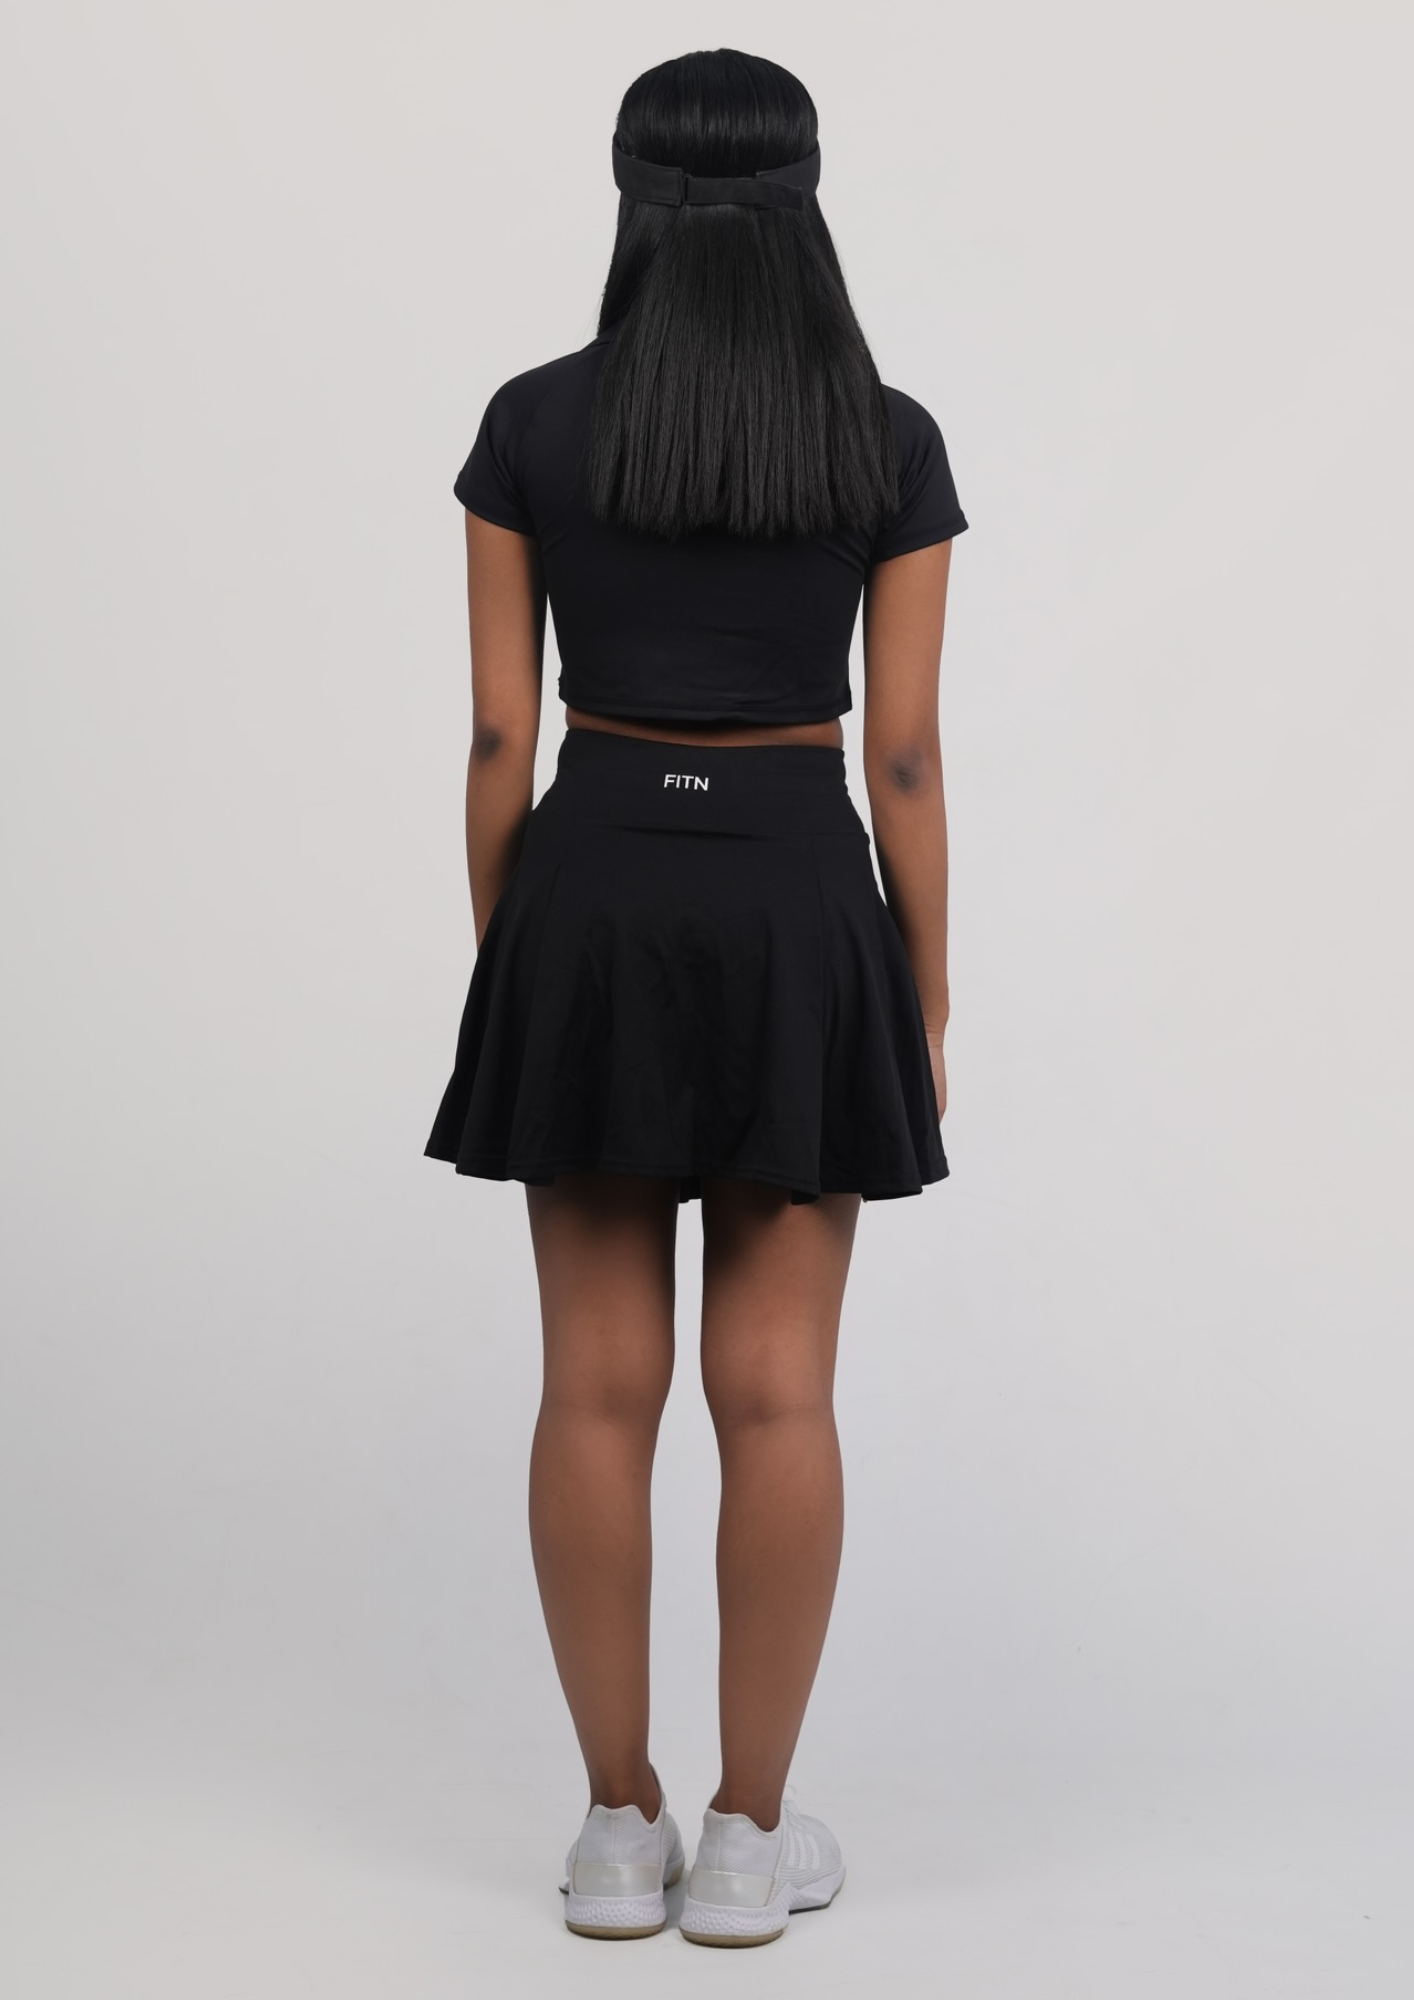 Tennis skirt black